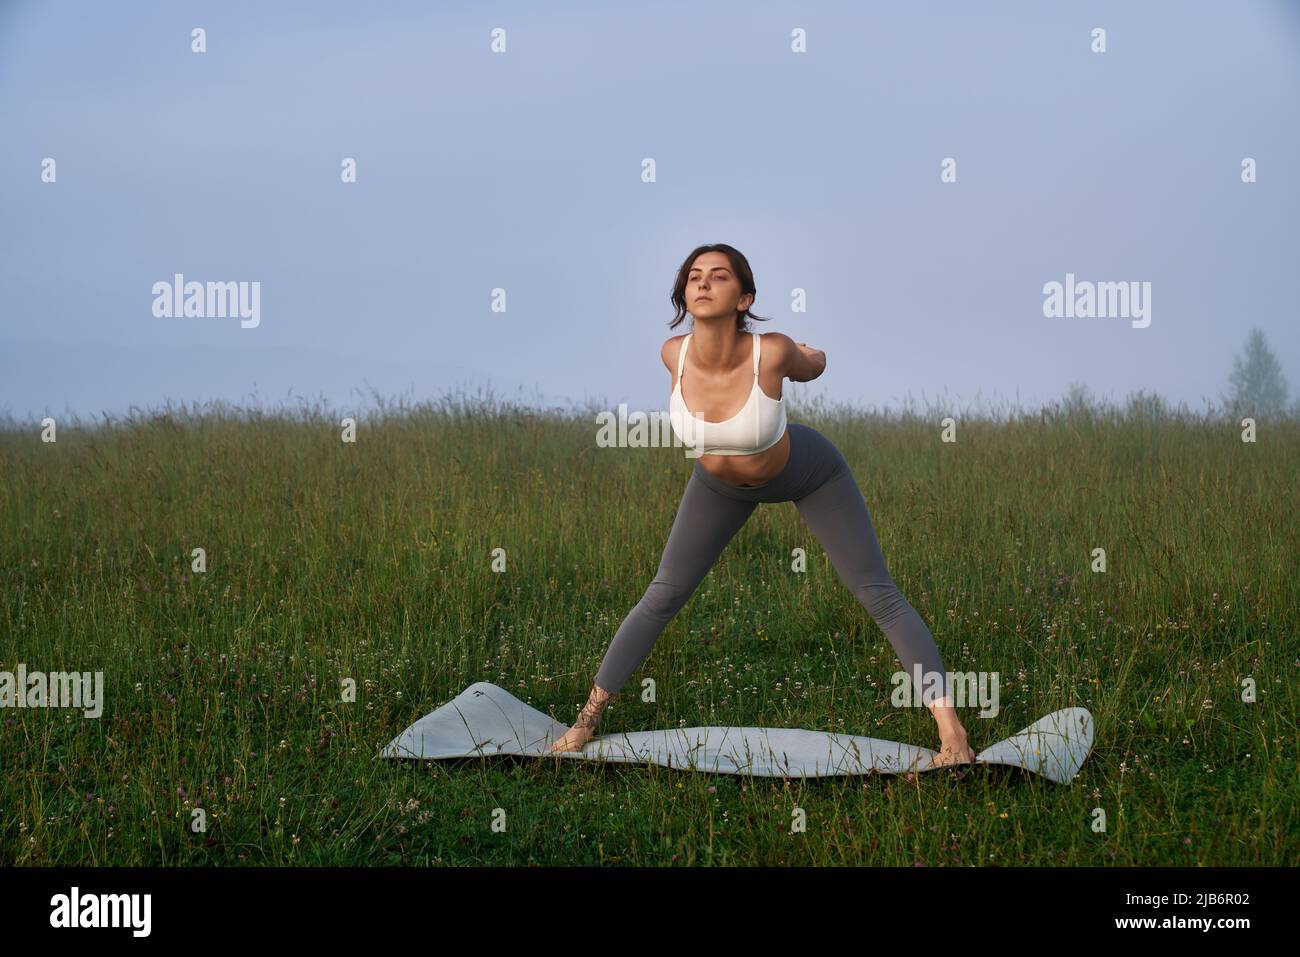 Aktive junge Frau in Sportkleidung genießen Morgentraining in grüner Natur. Regelmäßiges Training an der frischen Luft. Konzept der gesunden Lebensweise. Stockfoto